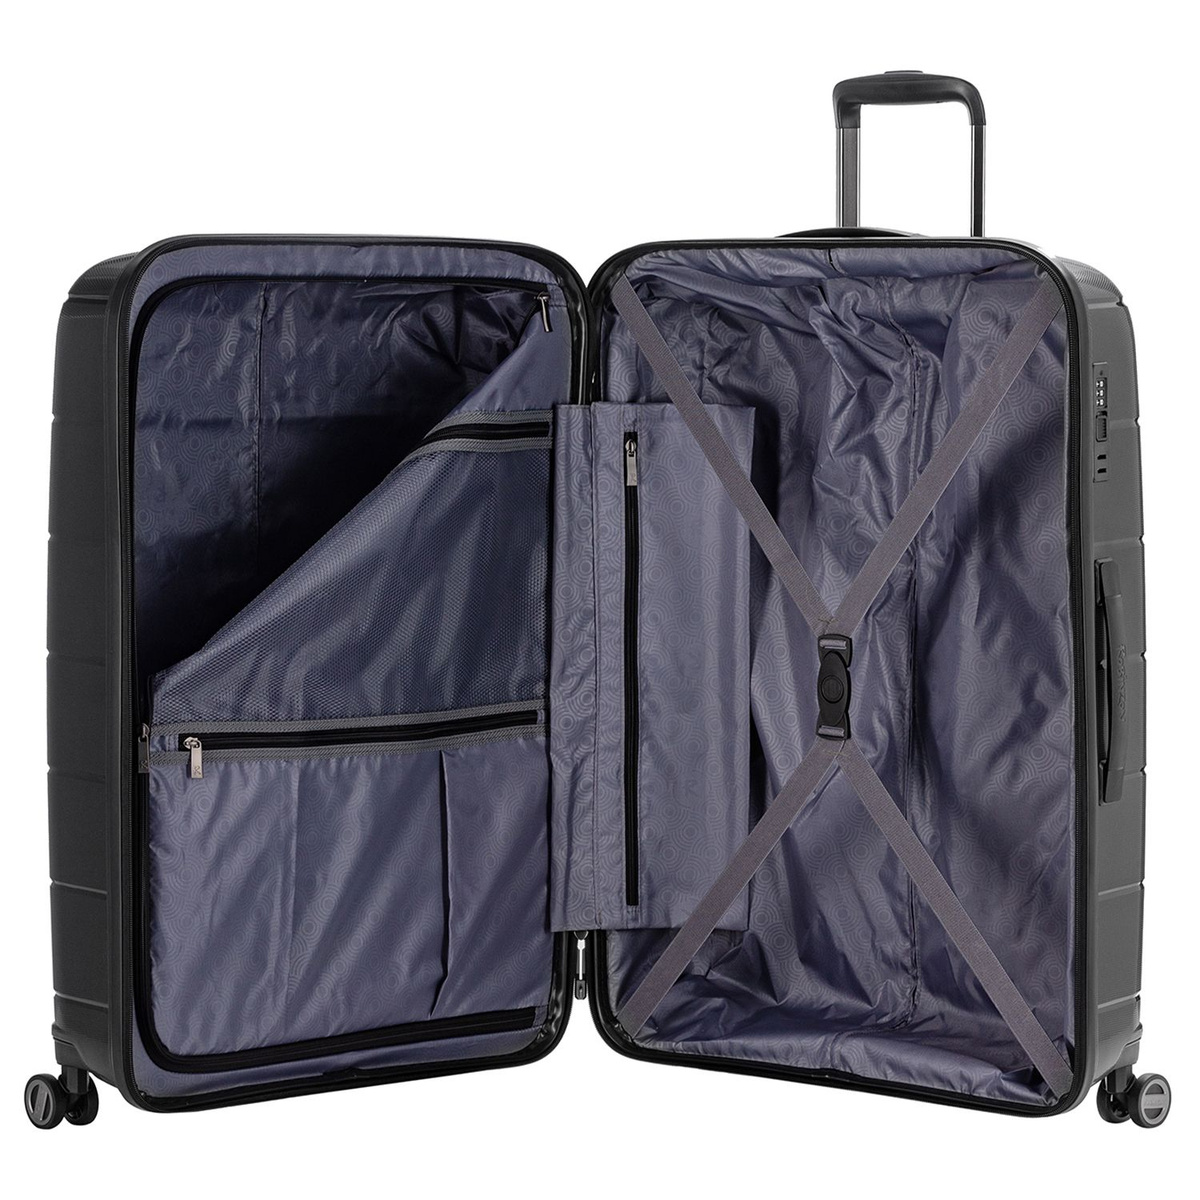 Удобная организация с прижимными ремнями, разделителем на молнии и тремя карманами позволит аккуратно упаковать необходимые для путешествия вещи.